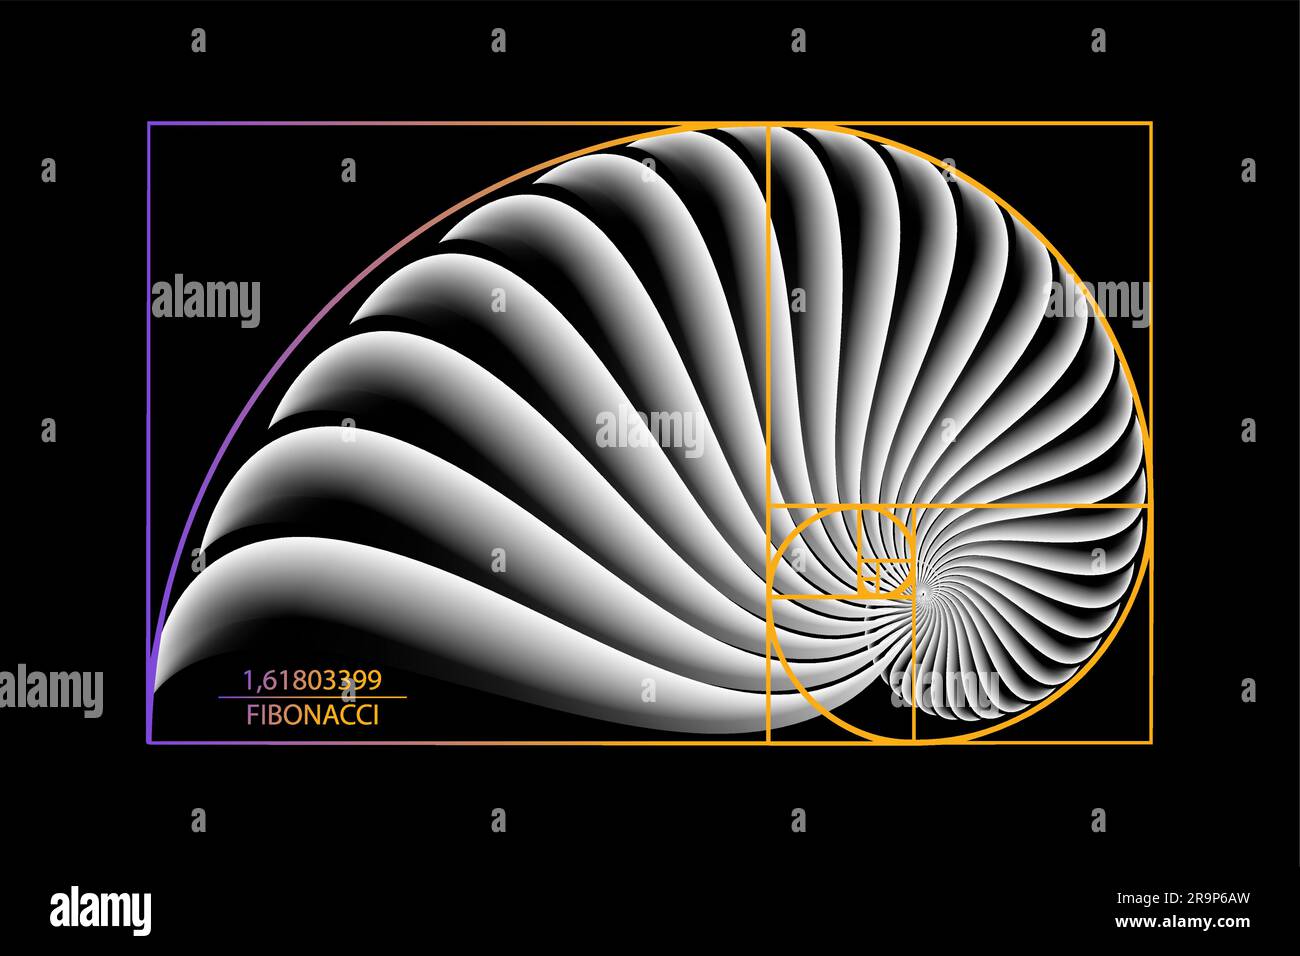 Fibonacci Sequence Golden ratio. Forme geometriche a spirale. Spirale di lumaca. Conchiglia marina di cerchi bianchi. Modello logo a geometria sacra. Vettore isolato Illustrazione Vettoriale